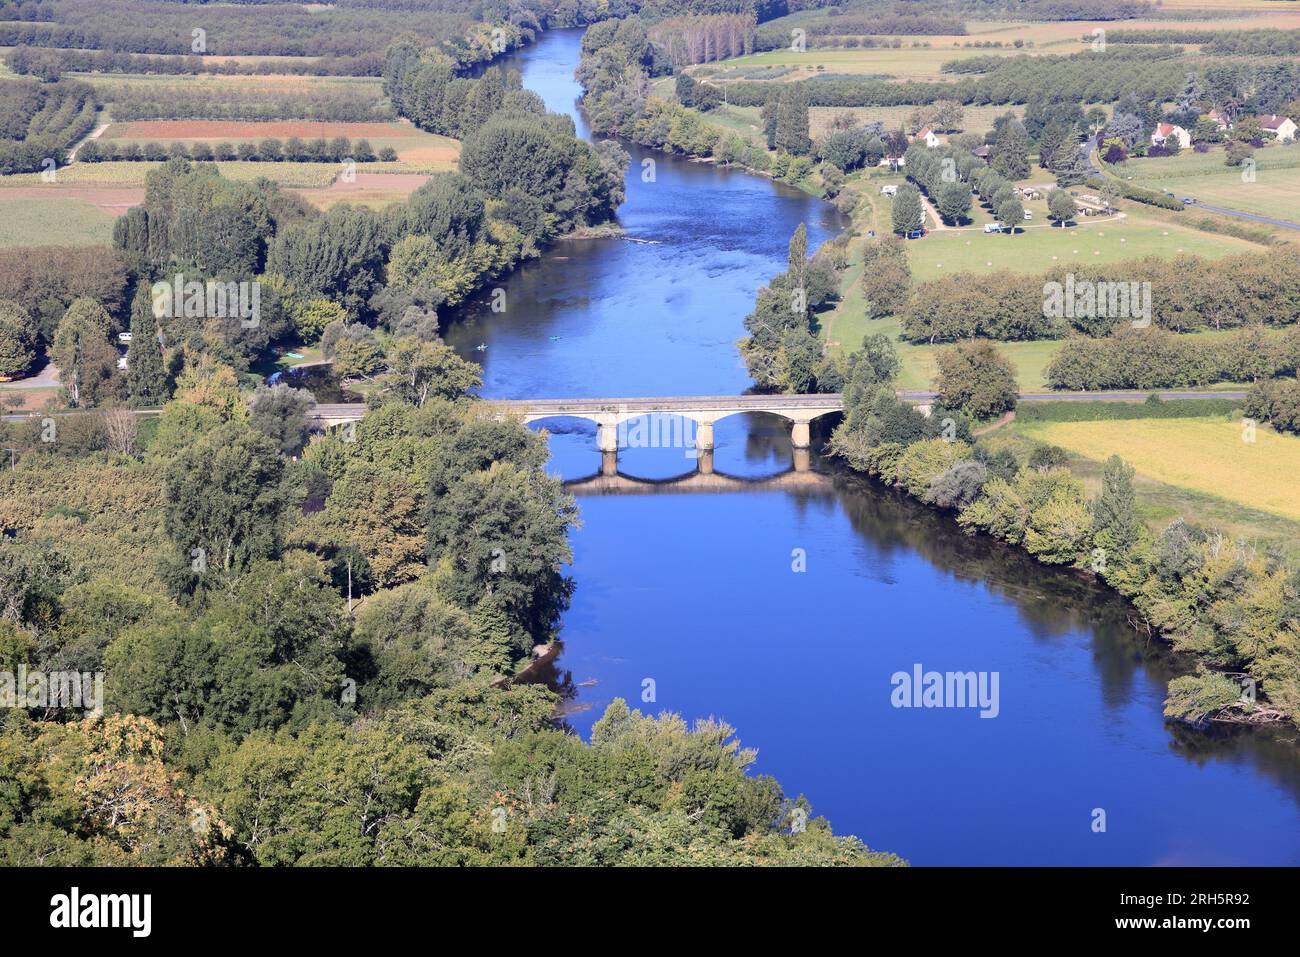 Vue aérienne de la rivière Dordogne entre Domme et la Roque-Gageac en Périgord Noir. La vallée de la Dordogne est une région de polyculture et de tour Foto Stock